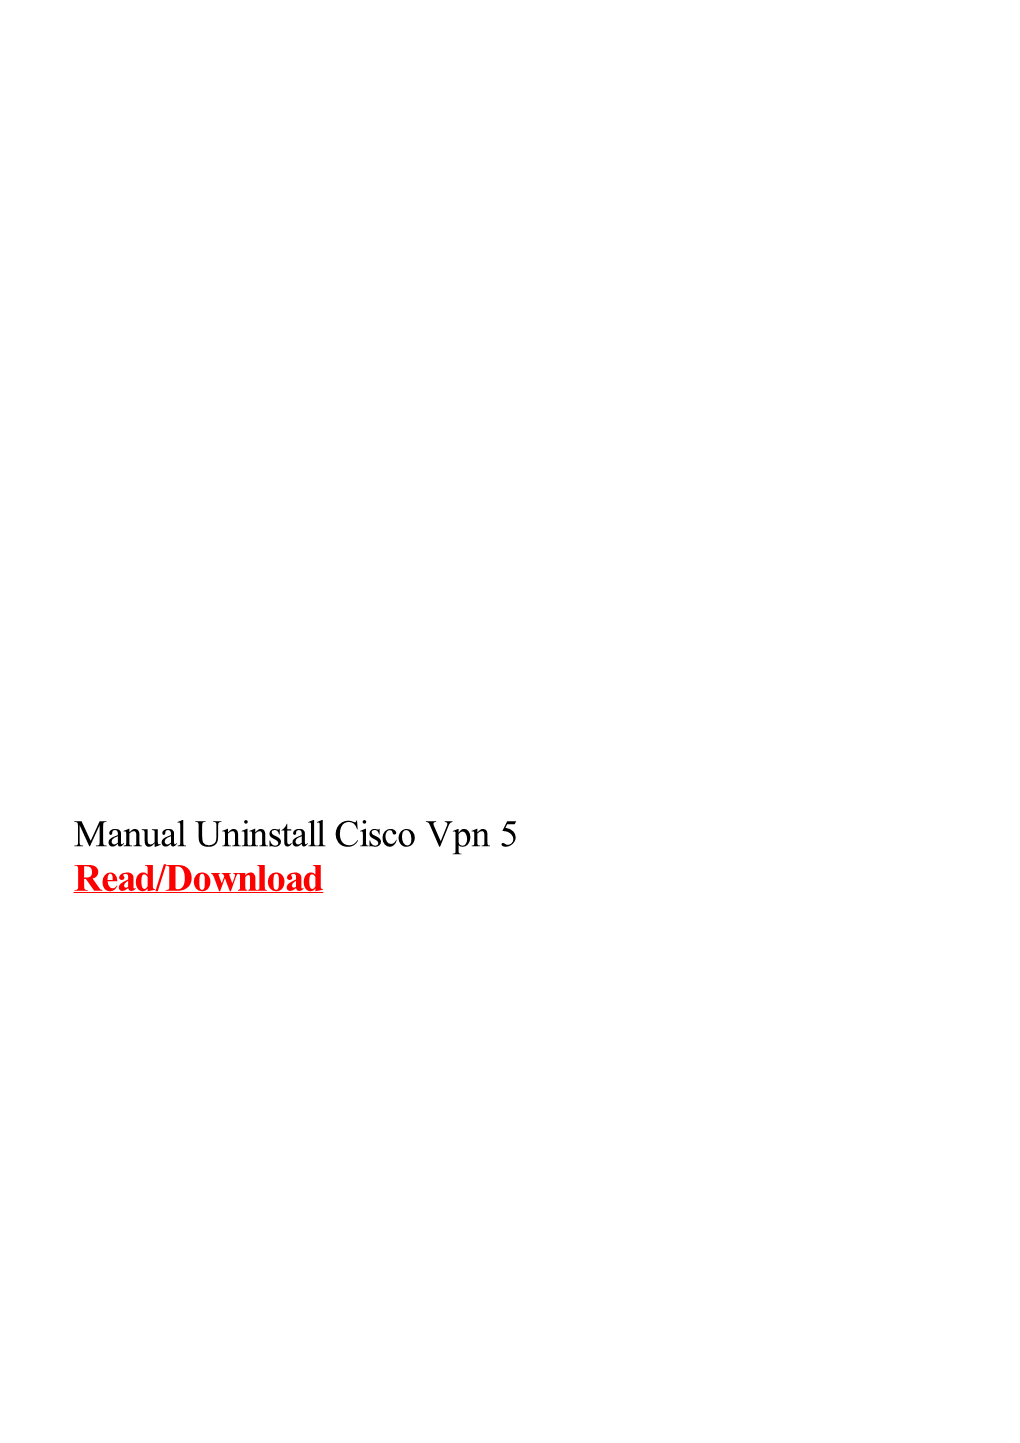 Manual Uninstall Cisco Vpn 5